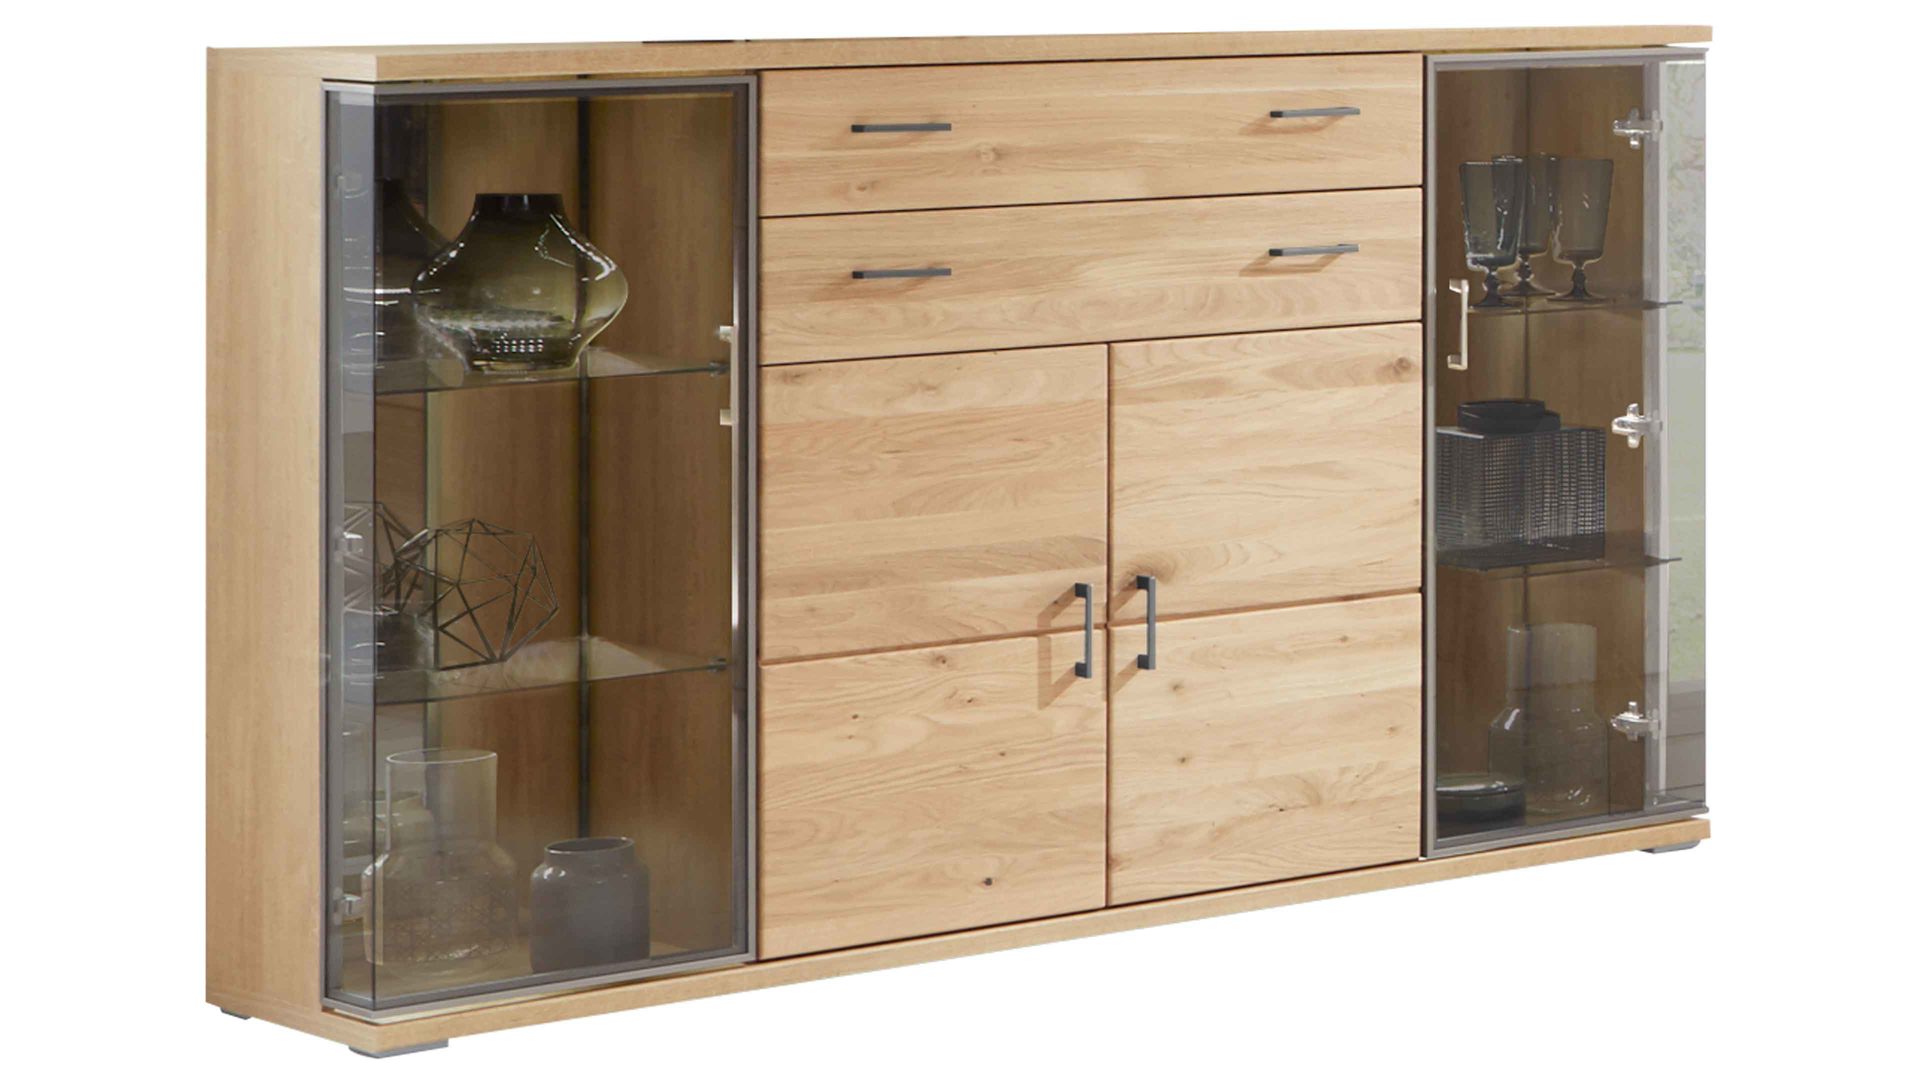 Sideboard Ideal möbel aus Holz in Holzfarben Sideboard Alteiche & braunes Parsolglas – vier Türen, zwei Schubladen